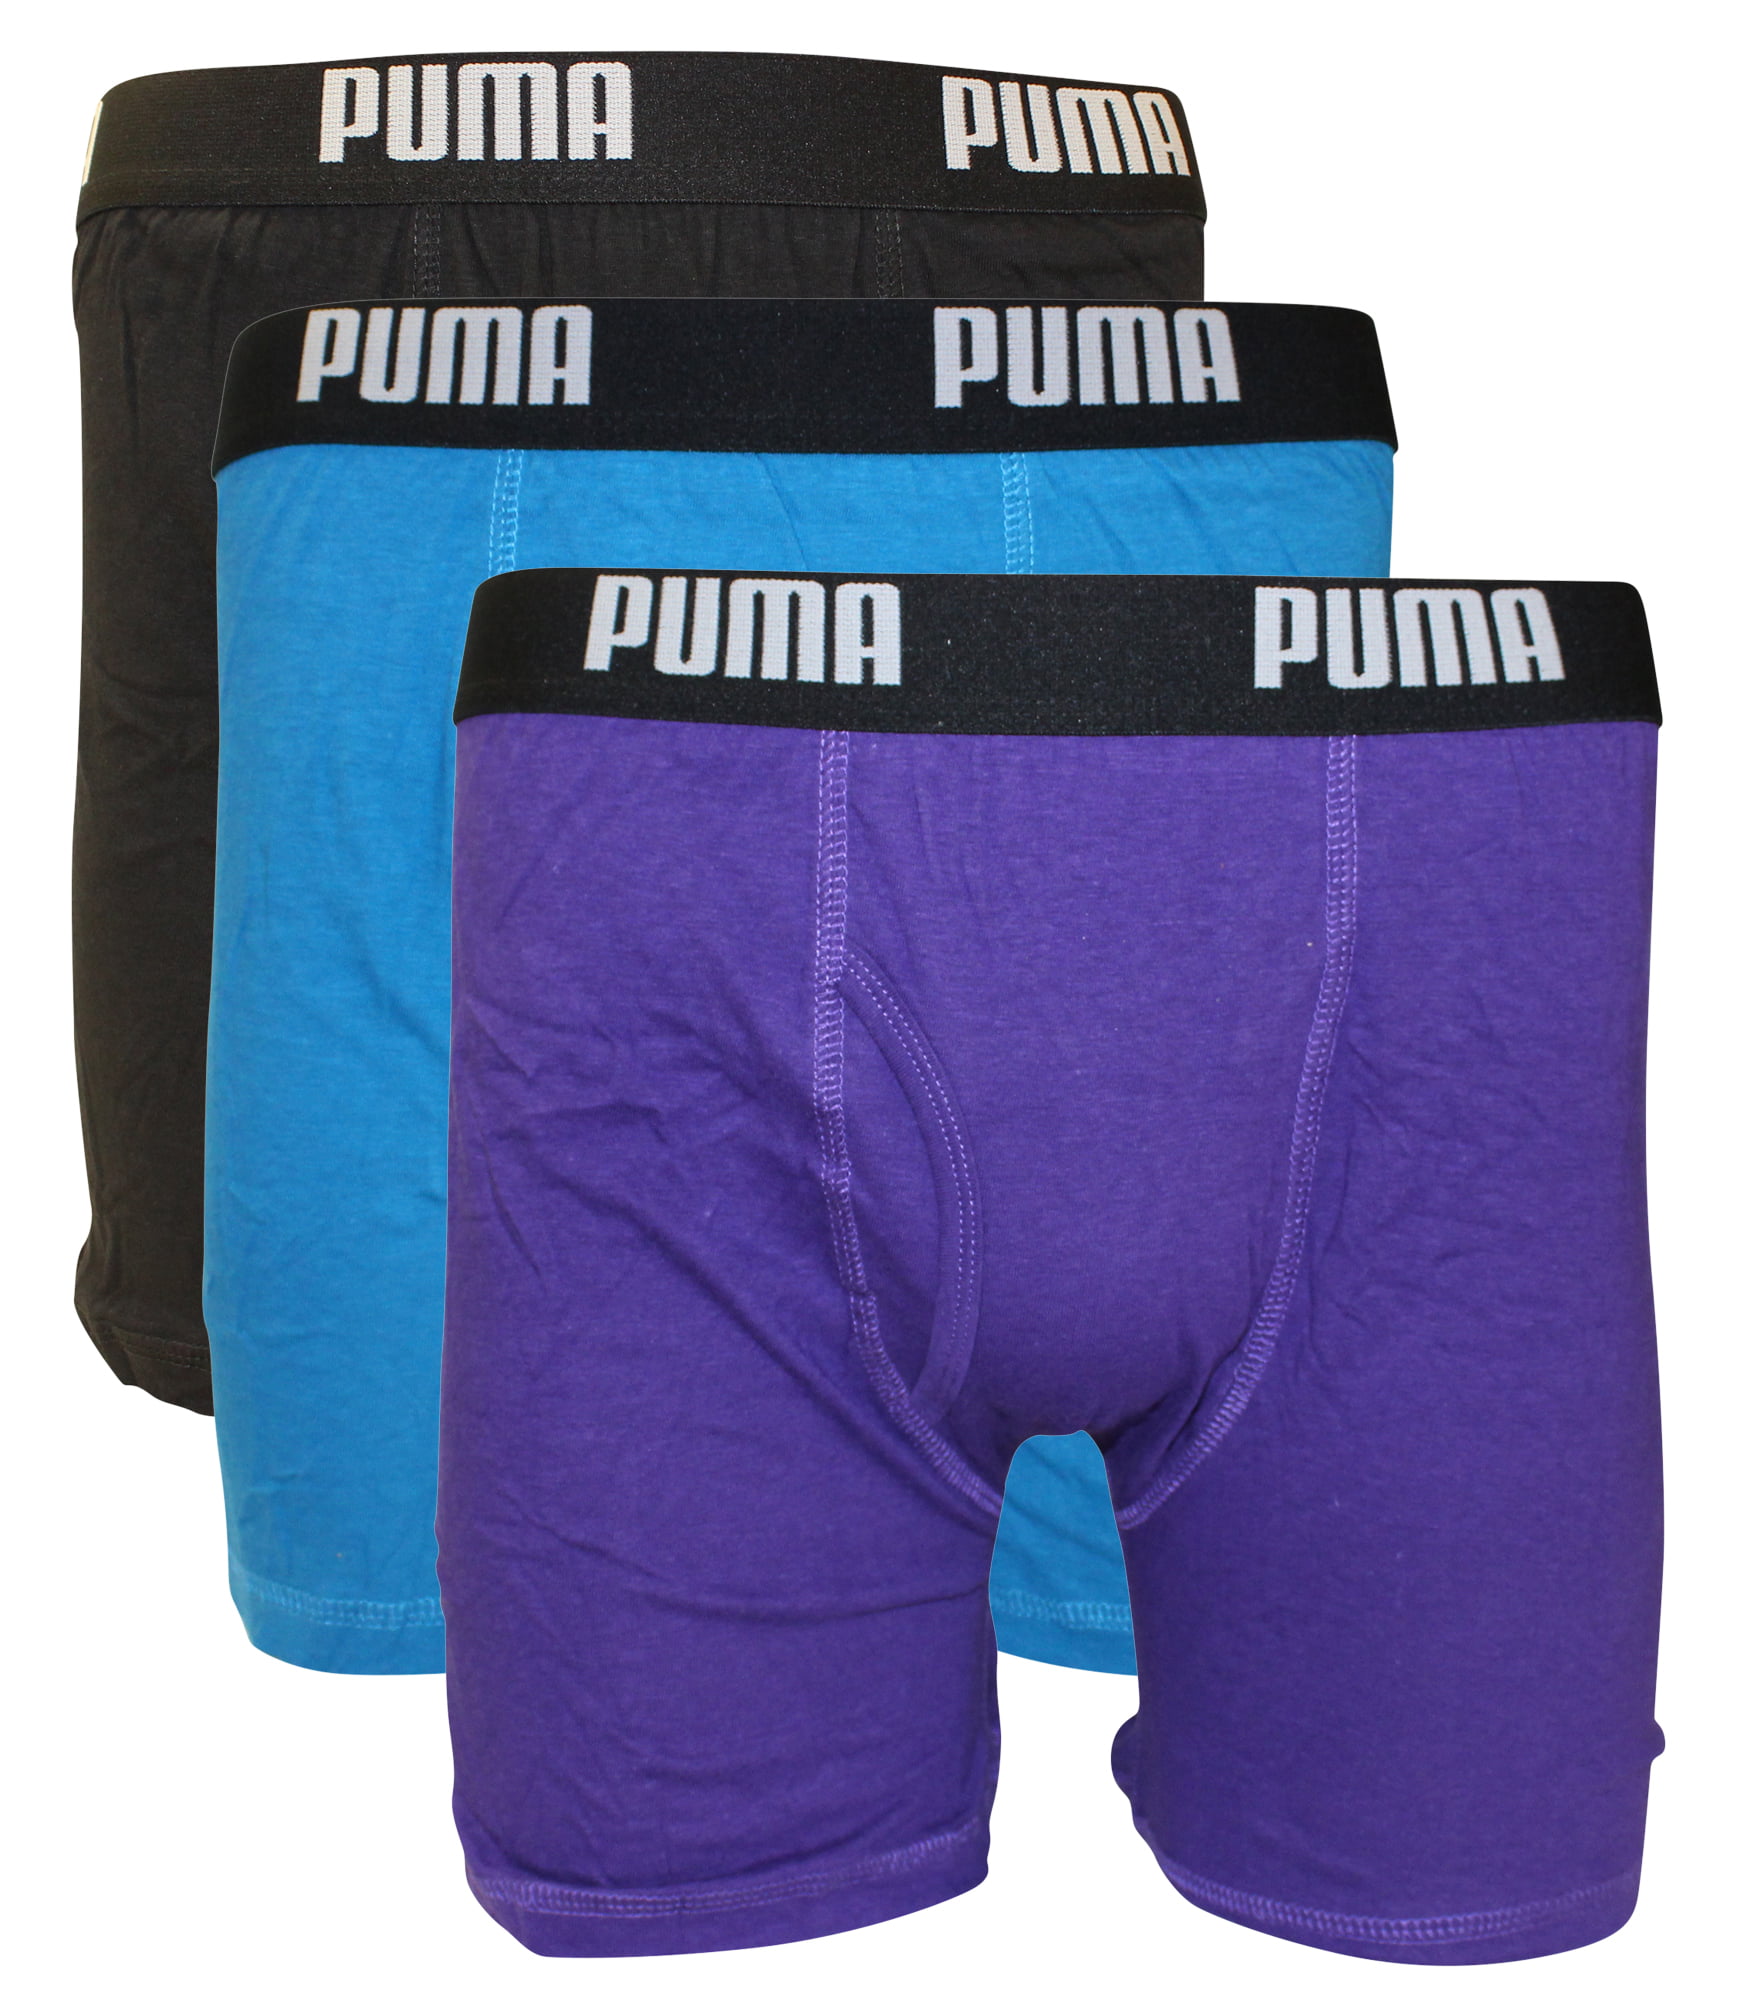 PUMA Men's 3 Pack Cotton Boxer Briefs 